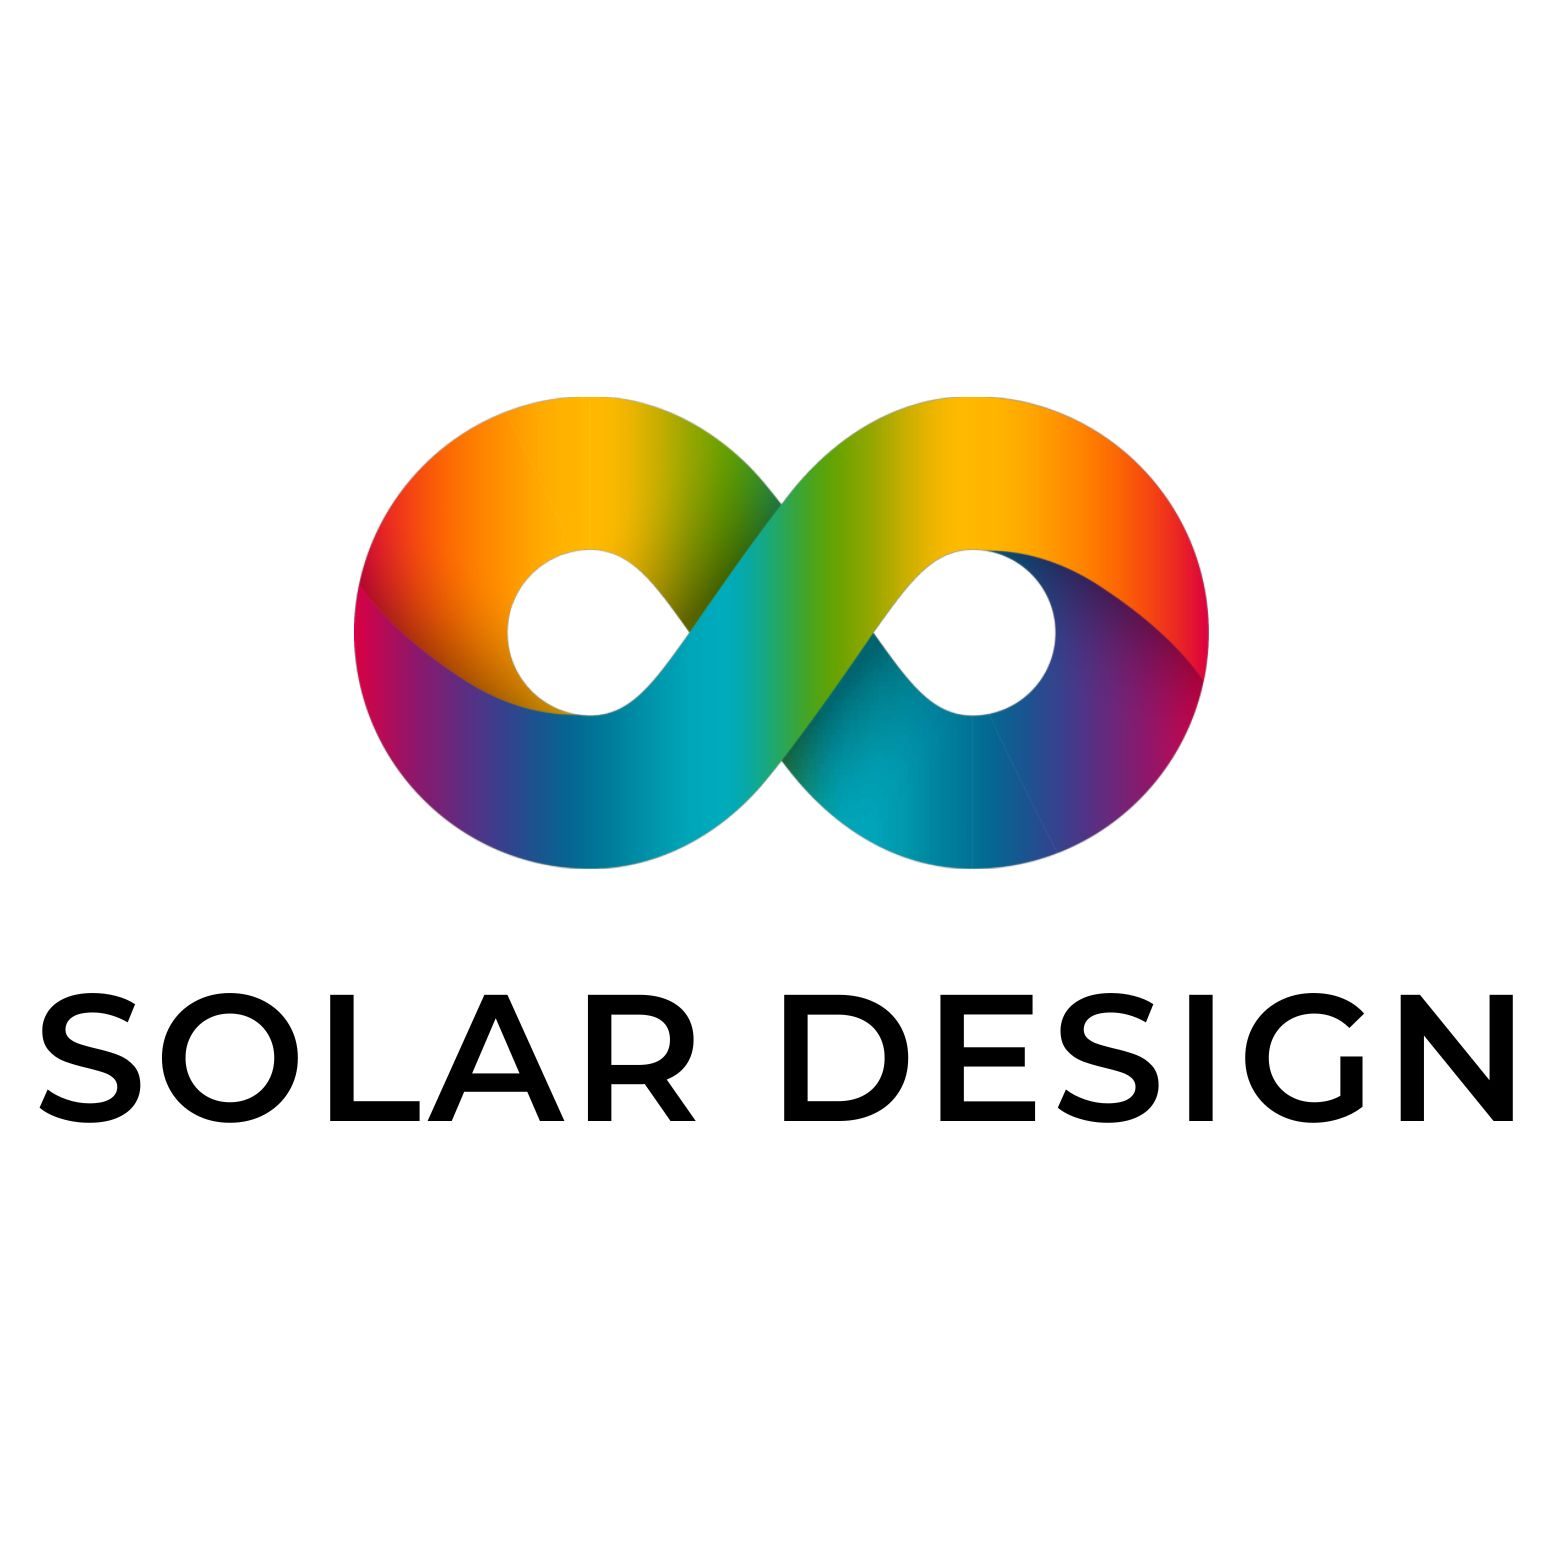 Solar Design